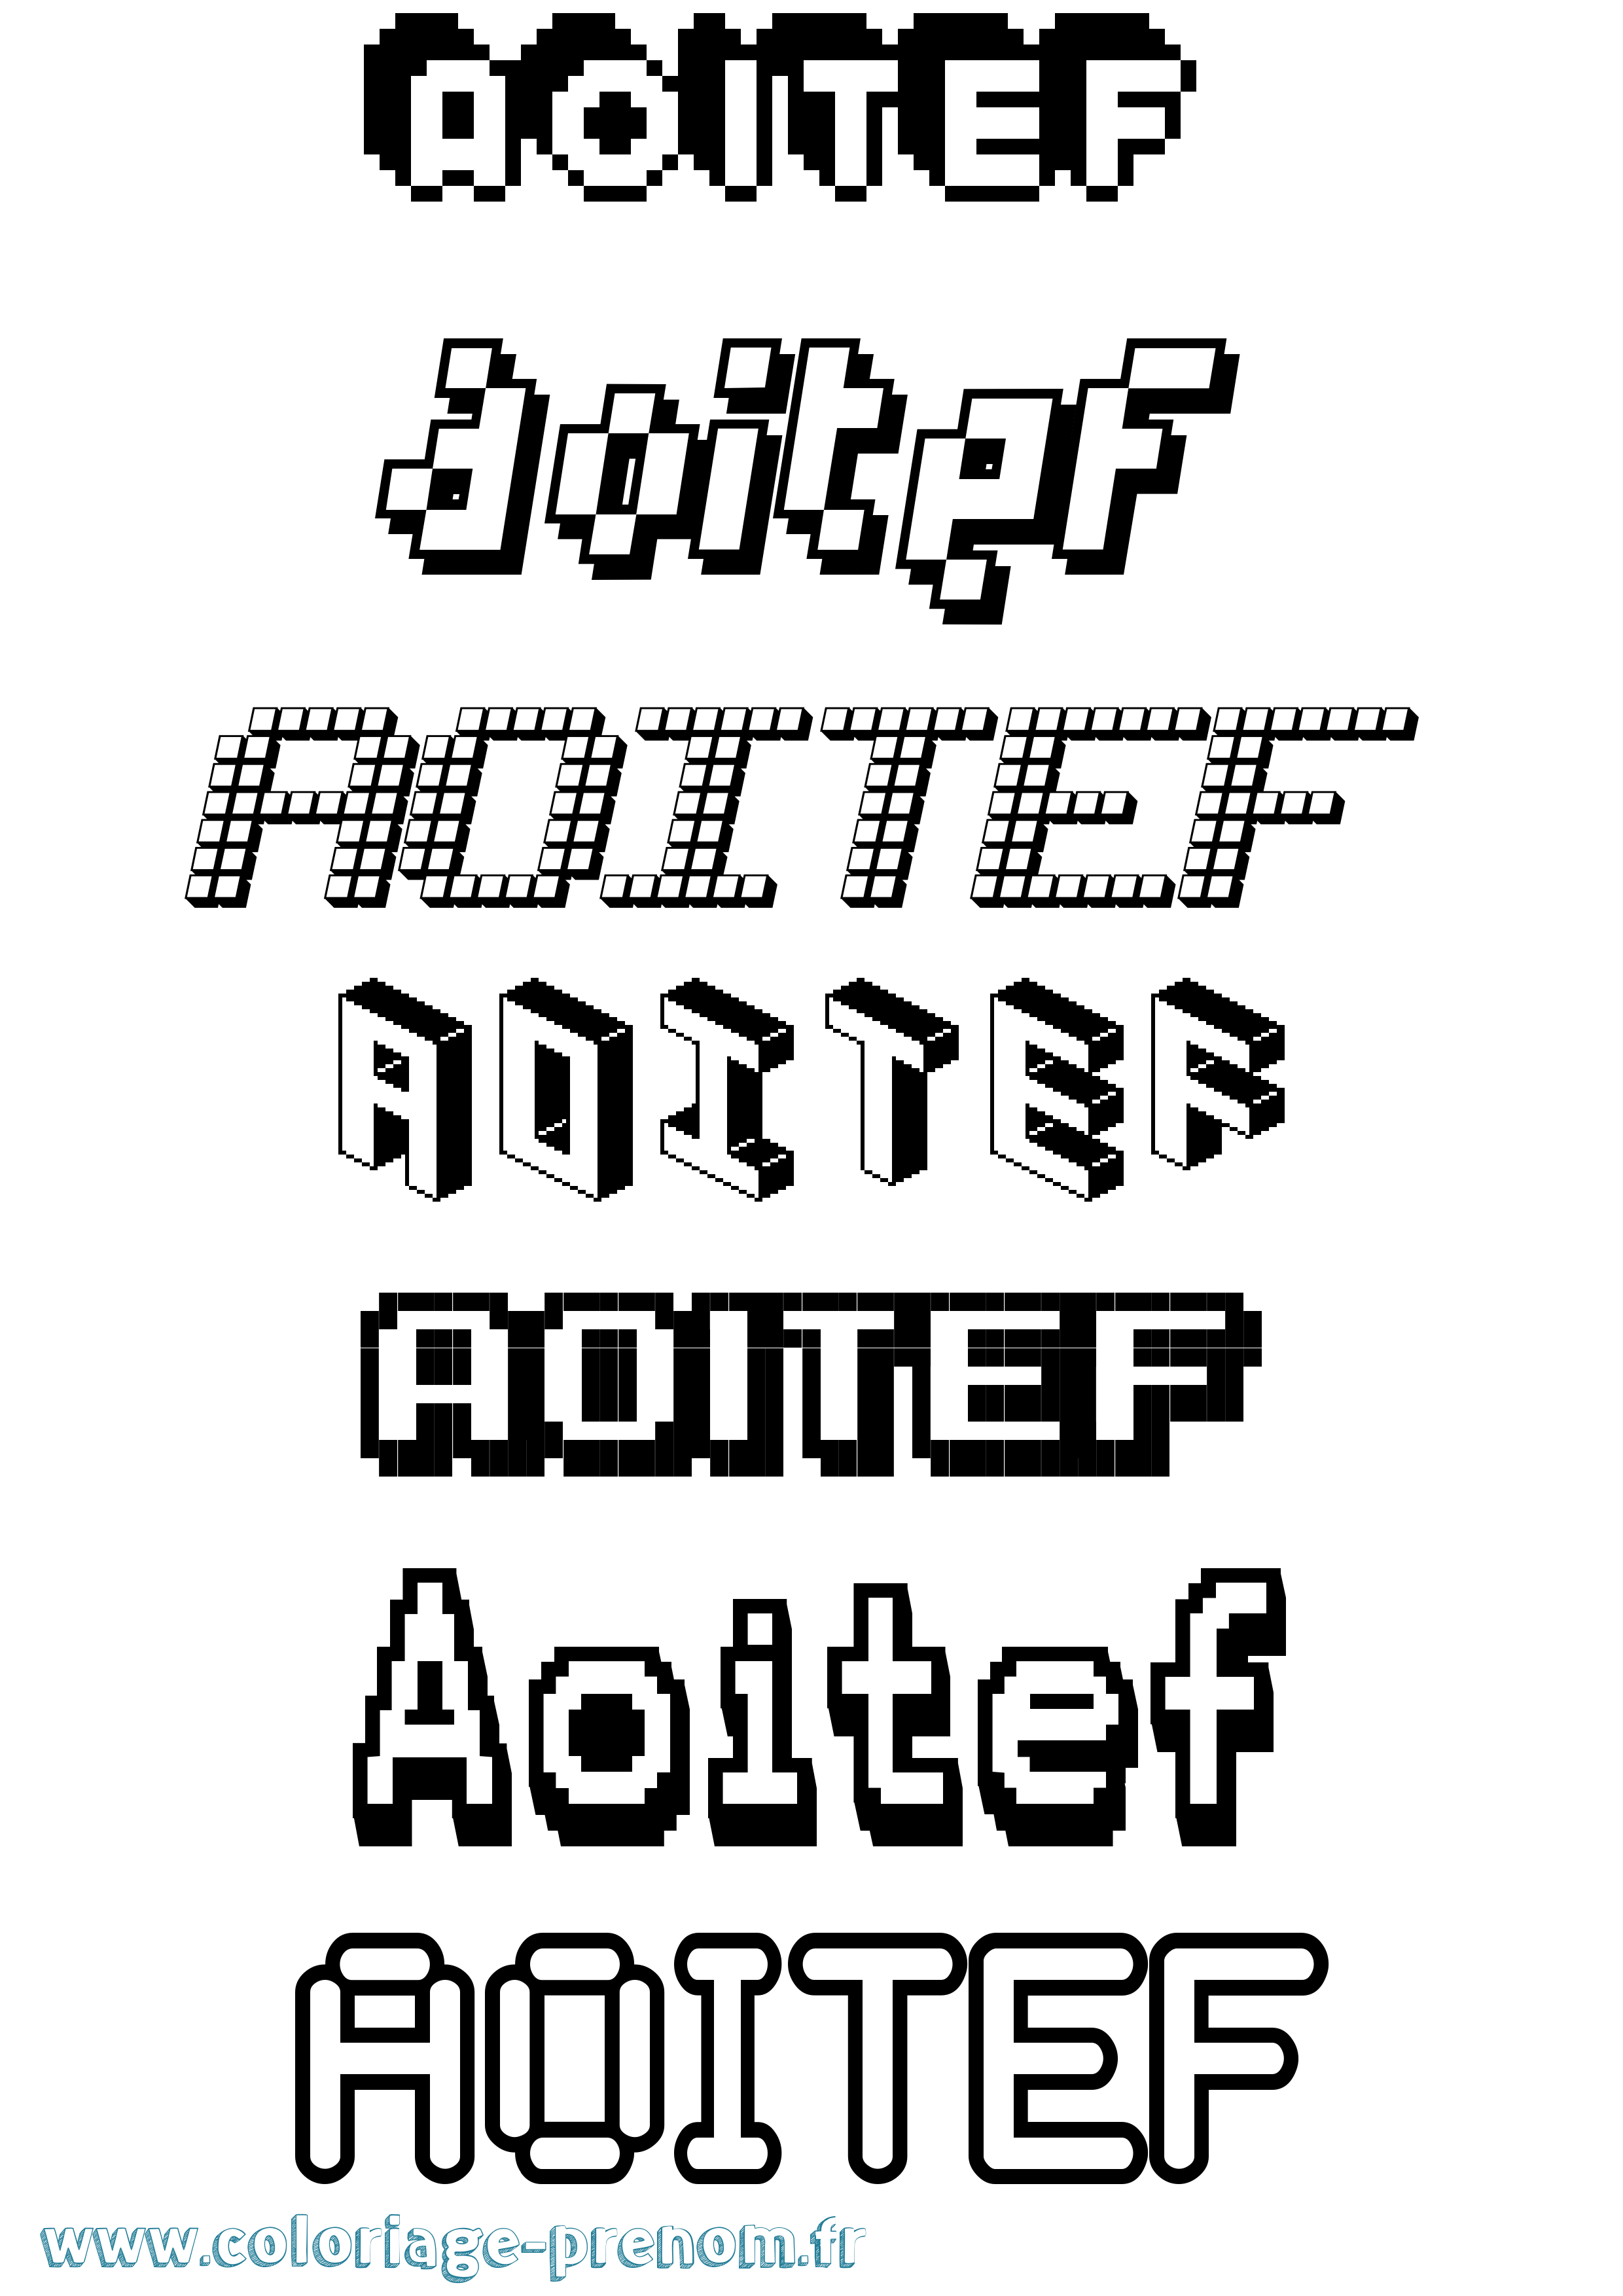 Coloriage prénom Aoitef Pixel